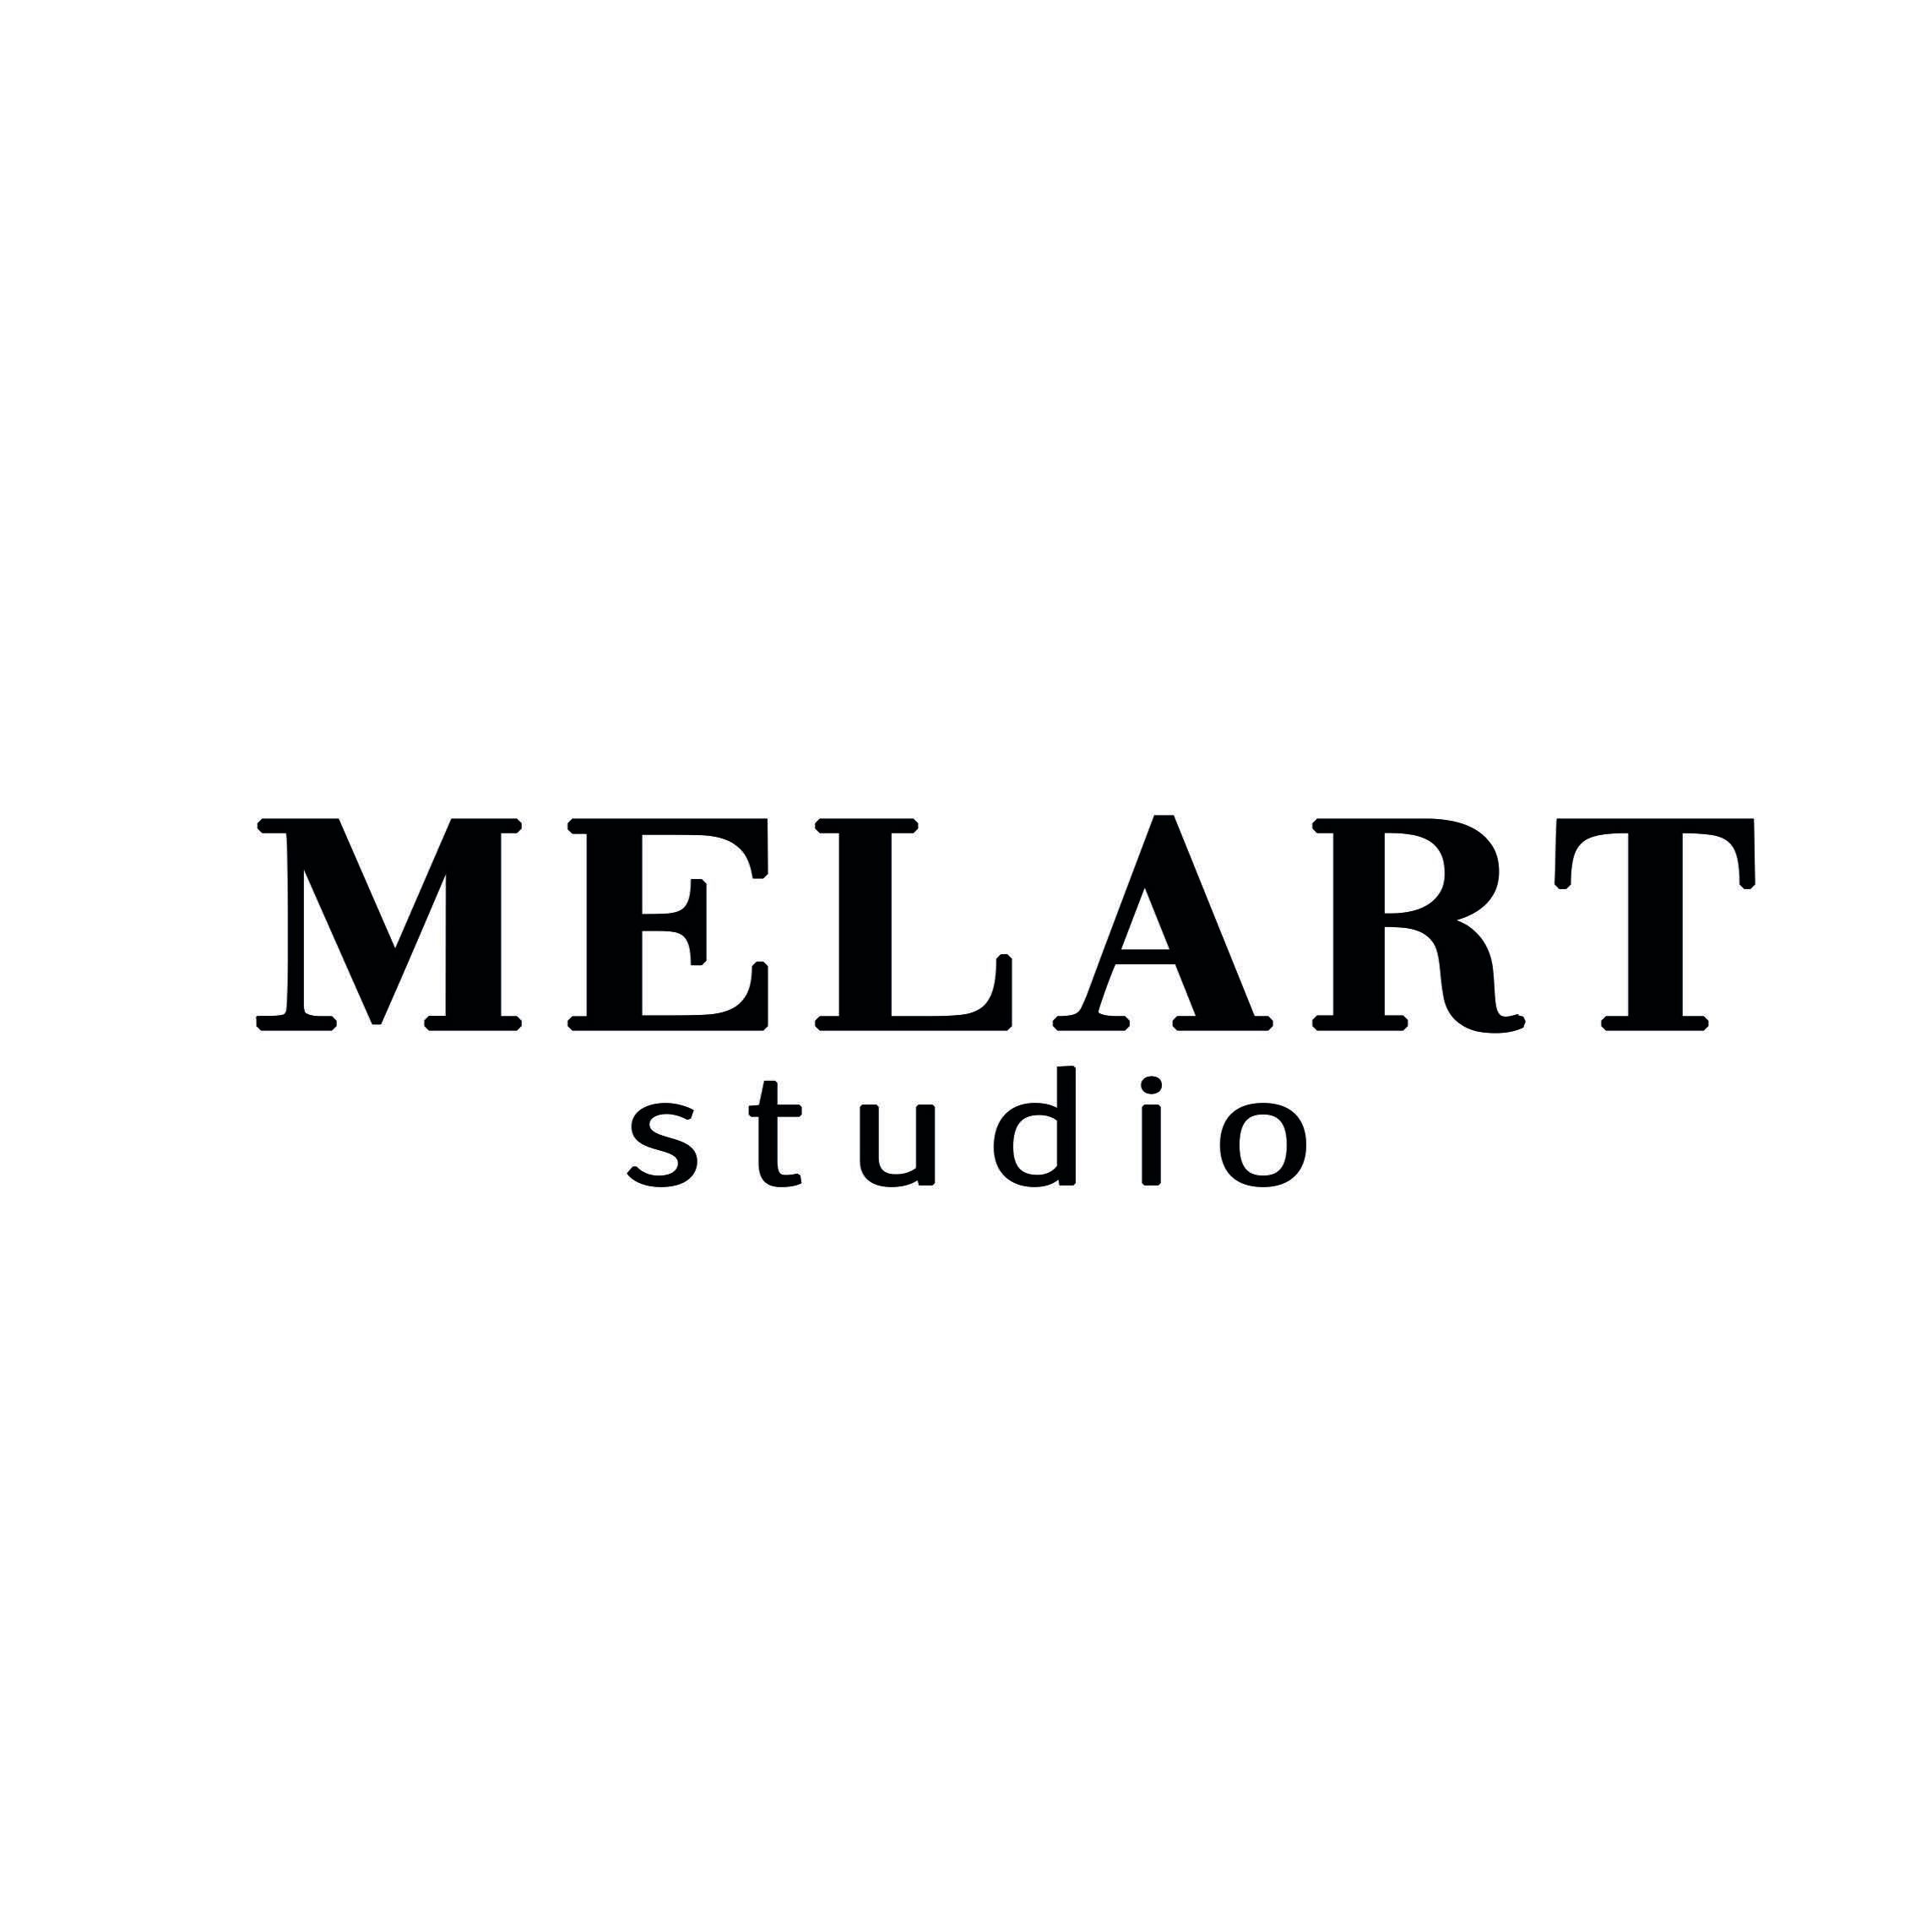 MELART studio, Dmowskiego 12, "Dmowskiego Centr" 1 piętro, 80-264, Gdańsk